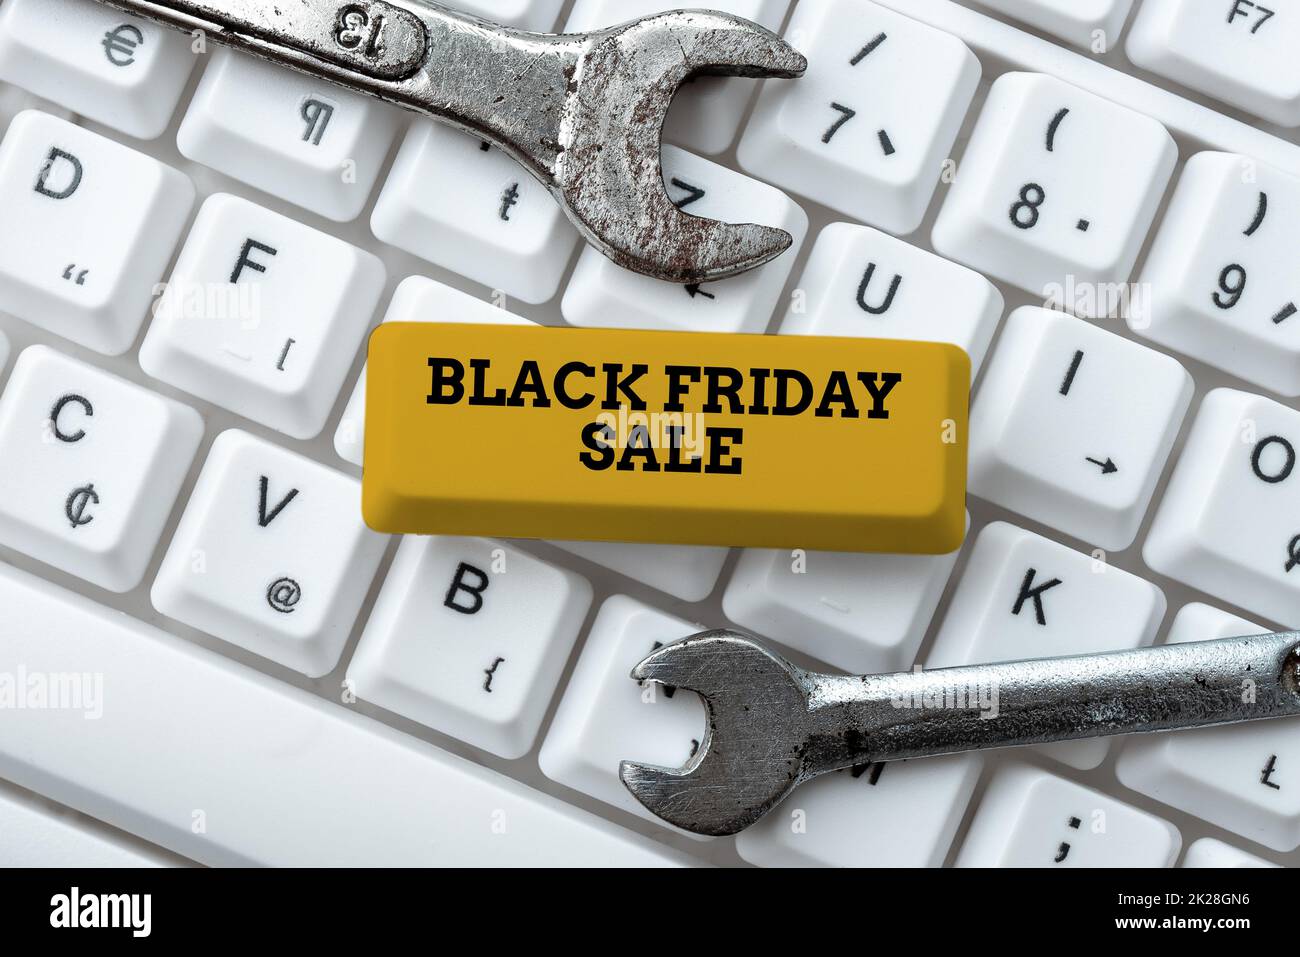 Schreiben mit Text „Black Friday Sale“. Konzept bedeutet, die Käufer mit exklusiven Produkten anzuziehen, ist ein niedrigerer Preis, das Konzept eines neuen Tippspiels, abstrakte Lösungen für Tippprobleme Stockfoto